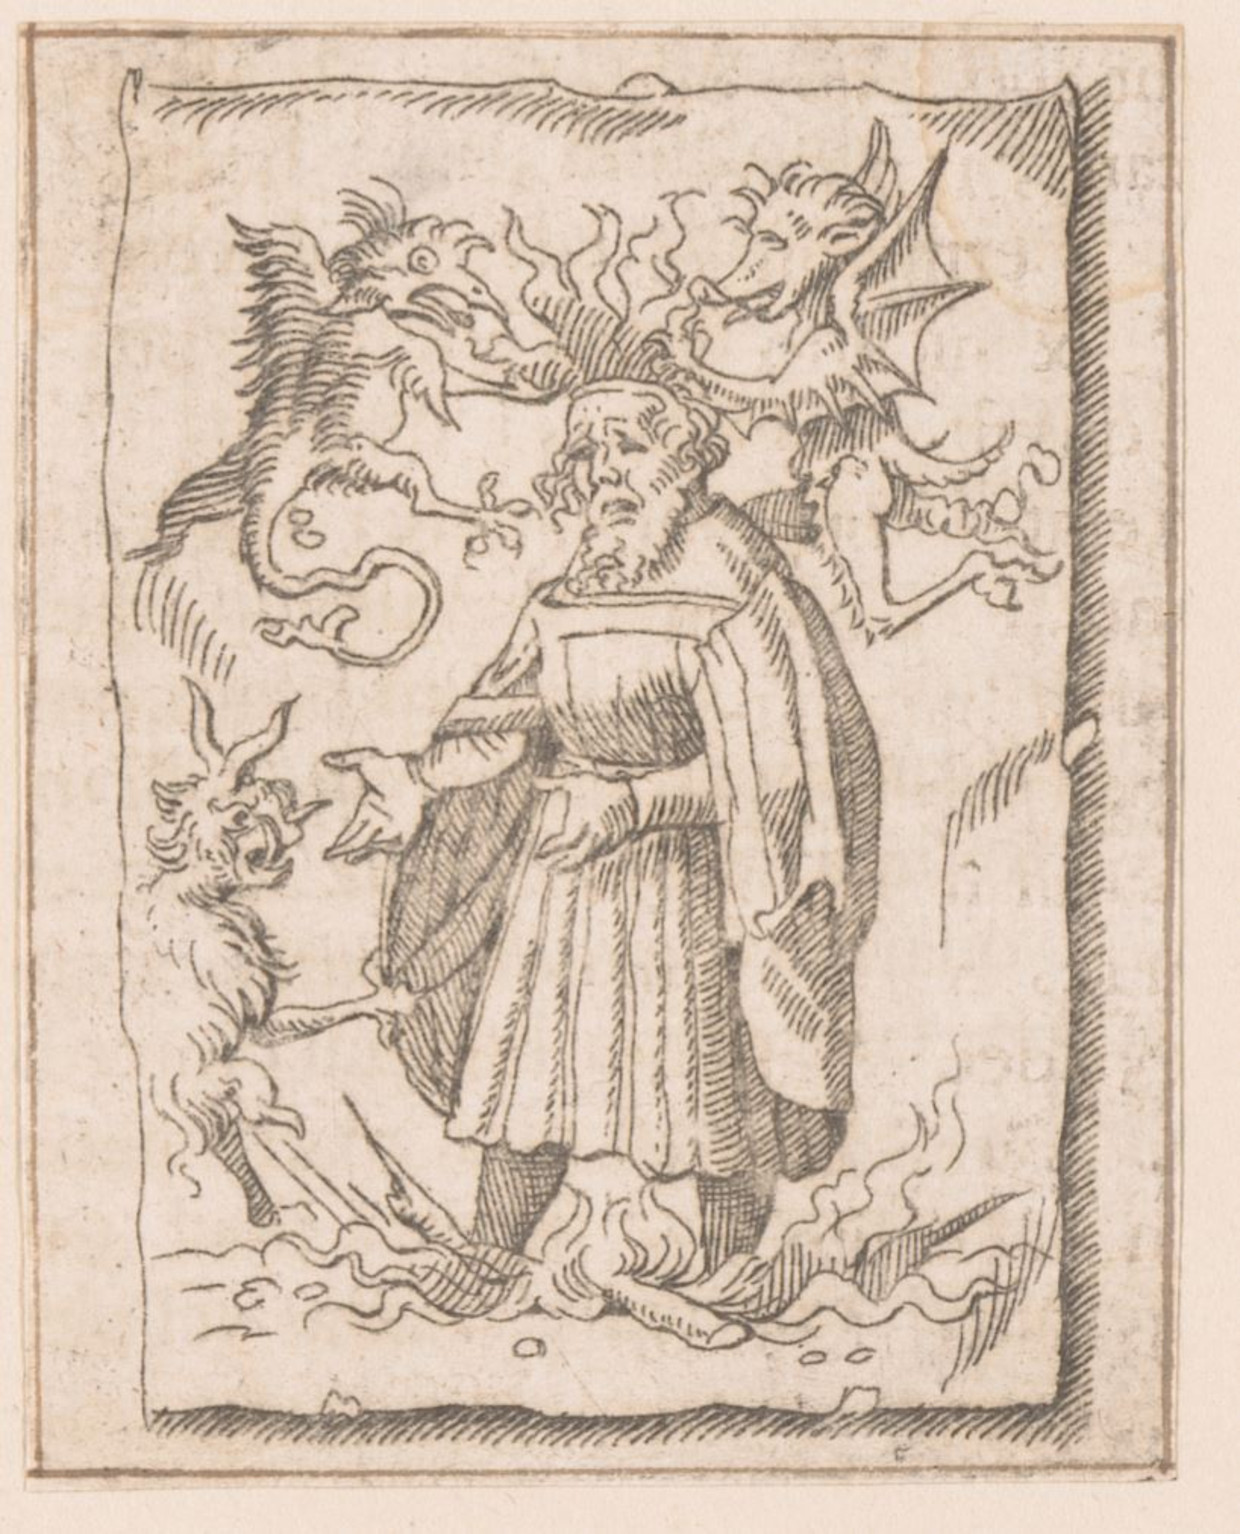 Illustratie uit de Lof der Zotheid van Desiderius Erasmus waarop te zien is hoe een ketter wordt verbrand. Erasmus pleitte in zijn geschrift voor verdraagzaamheid. Beeld Archief Rijksmuseum